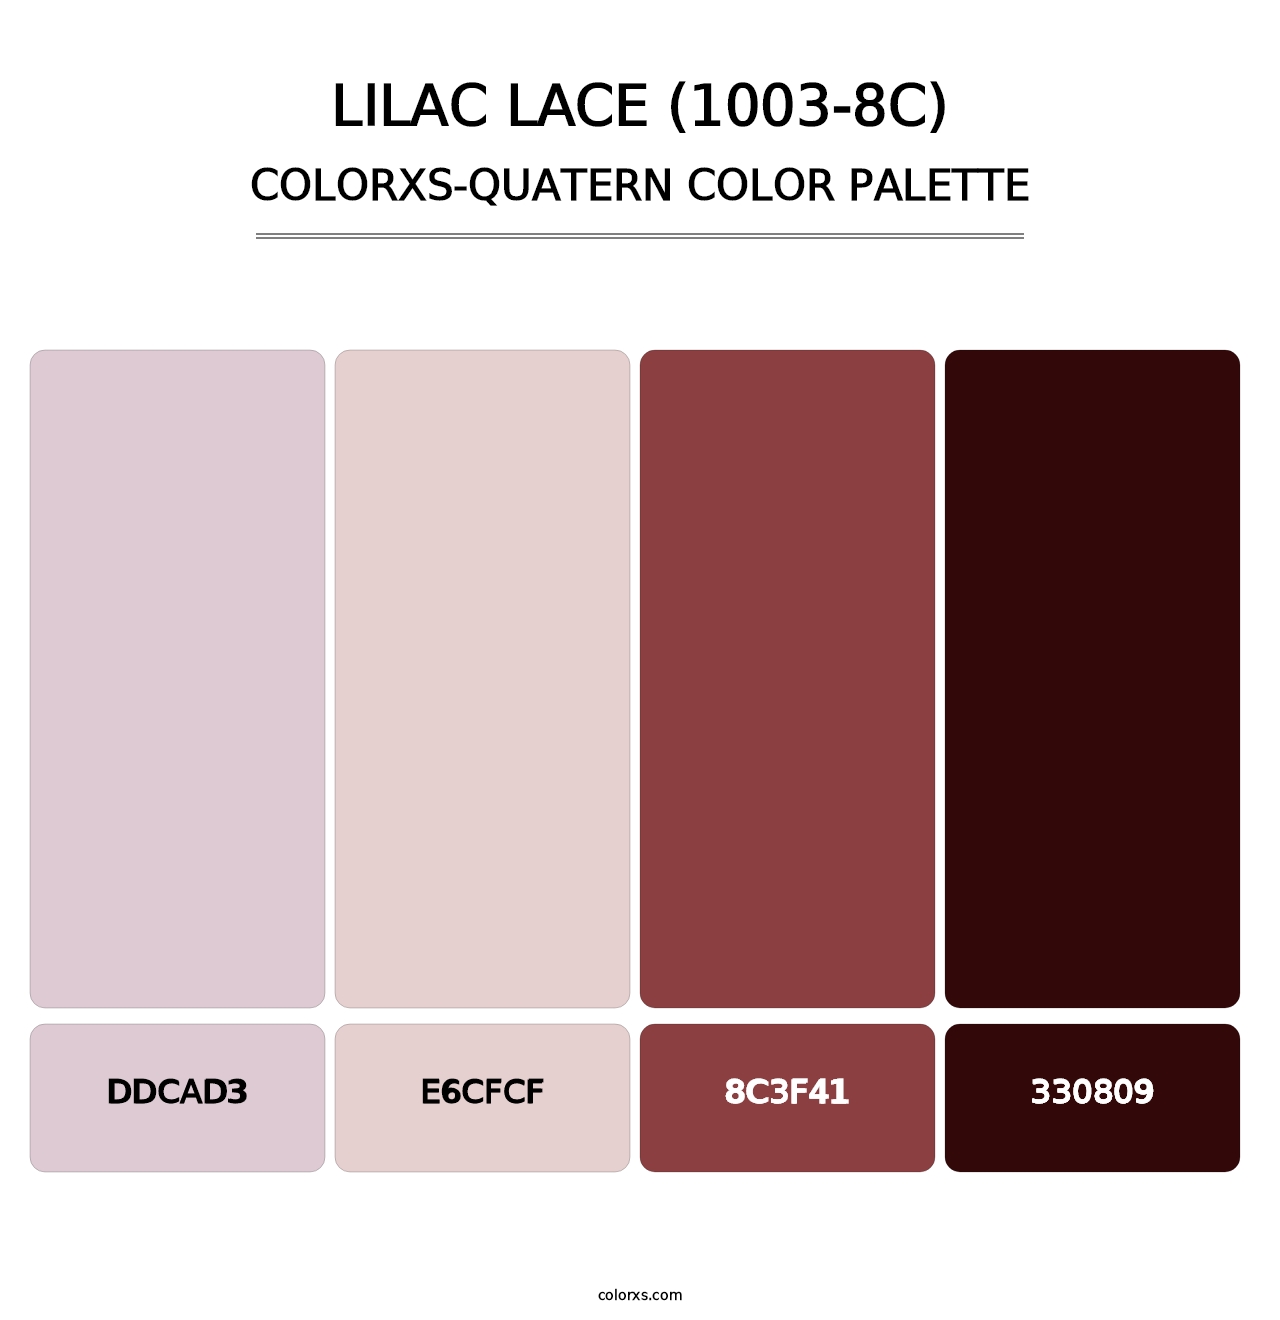 Lilac Lace (1003-8C) - Colorxs Quatern Palette